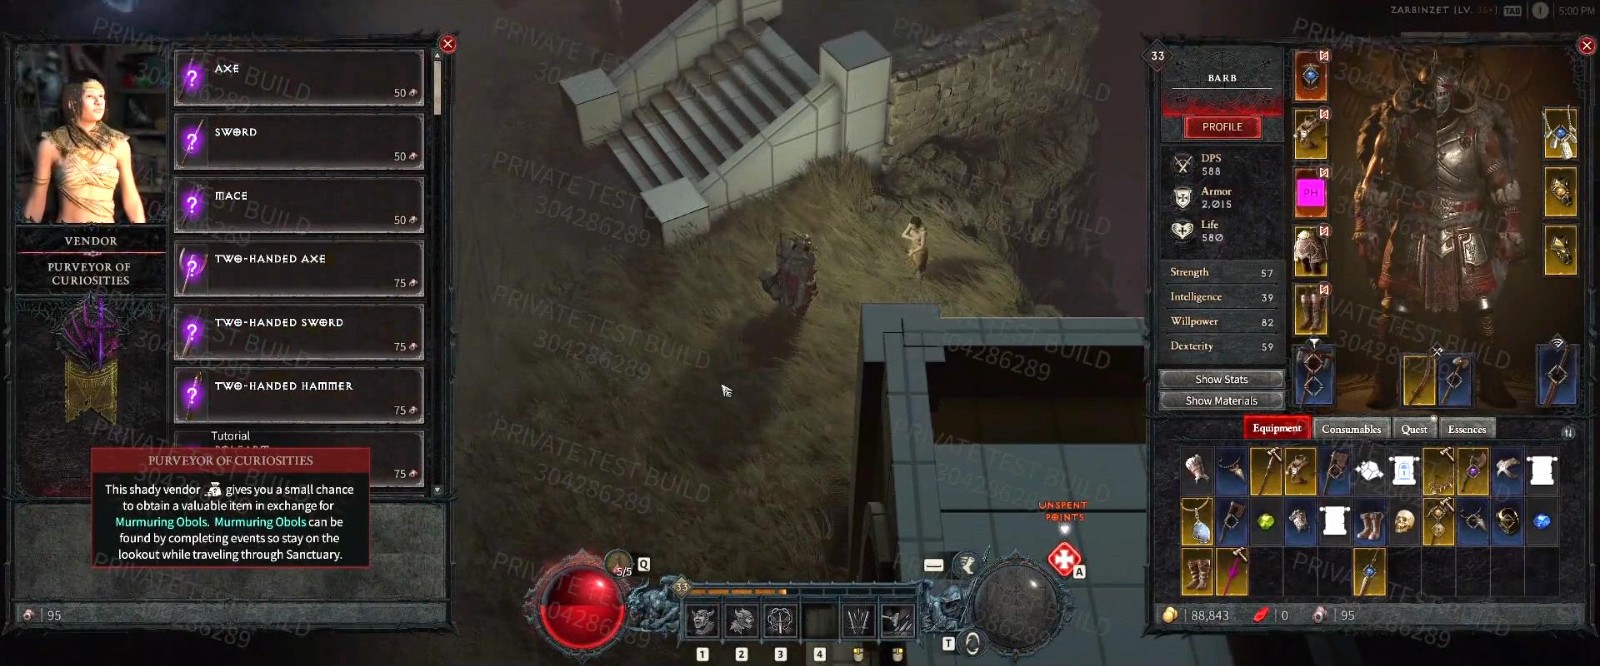 《暗黑破坏神4》新泄露视频 游戏画面和玩法展示 二次世界 第8张